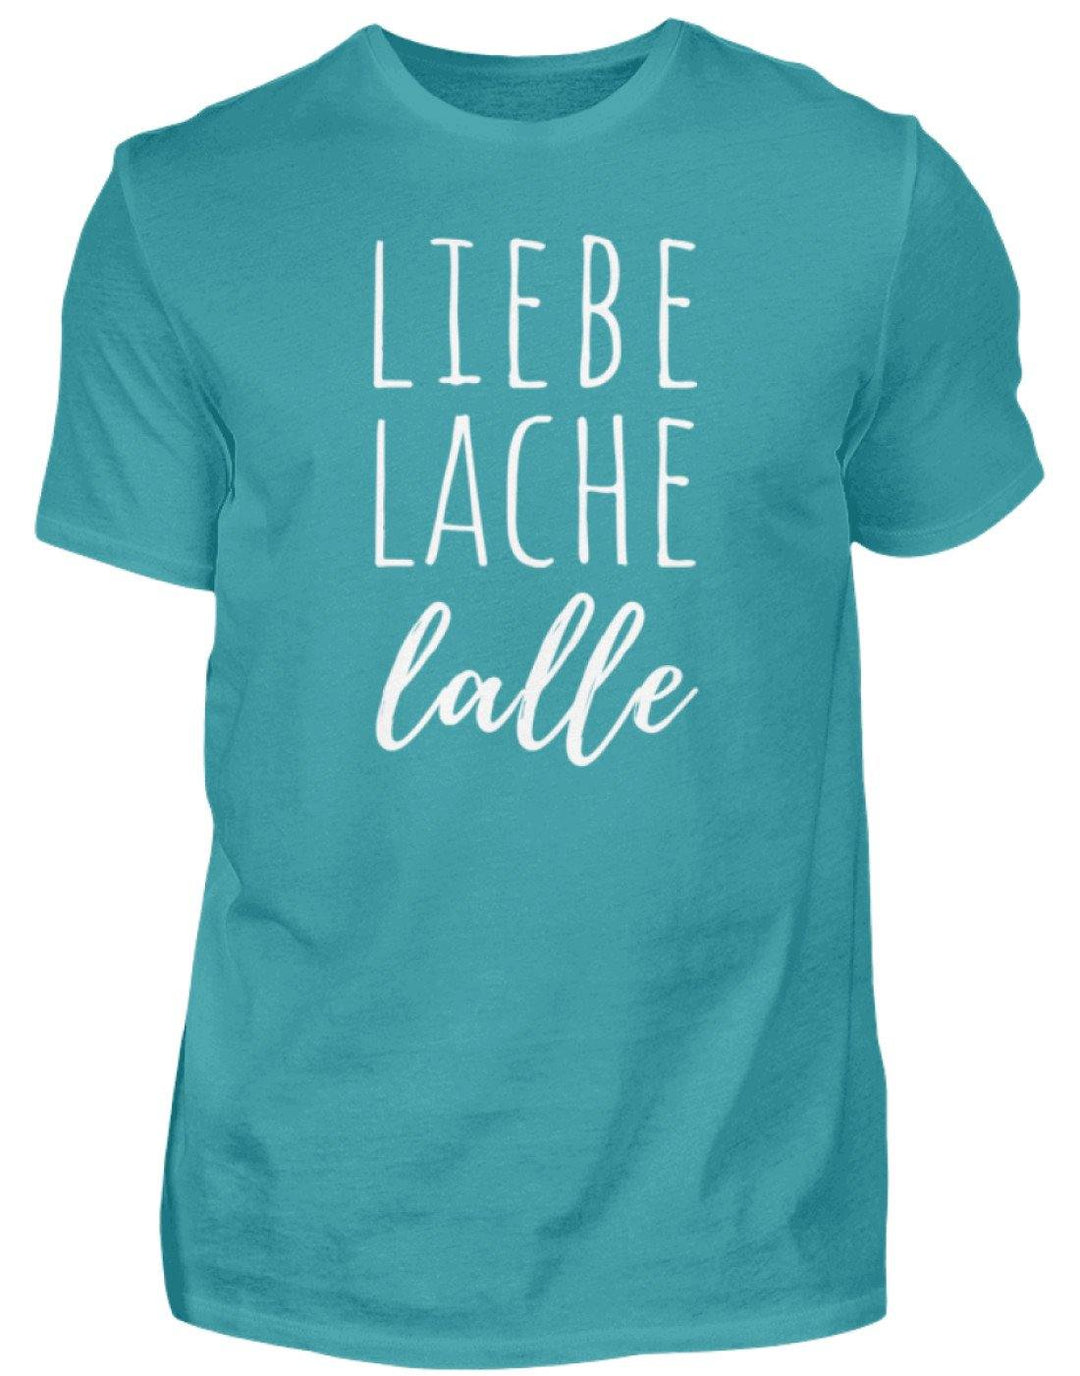 Liebe Lache Lalle - Words on Shirt  - Herren Shirt - Words on Shirts Sag es mit dem Mittelfinger Shirts Hoodies Sweatshirt Taschen Gymsack Spruch Sprüche Statement